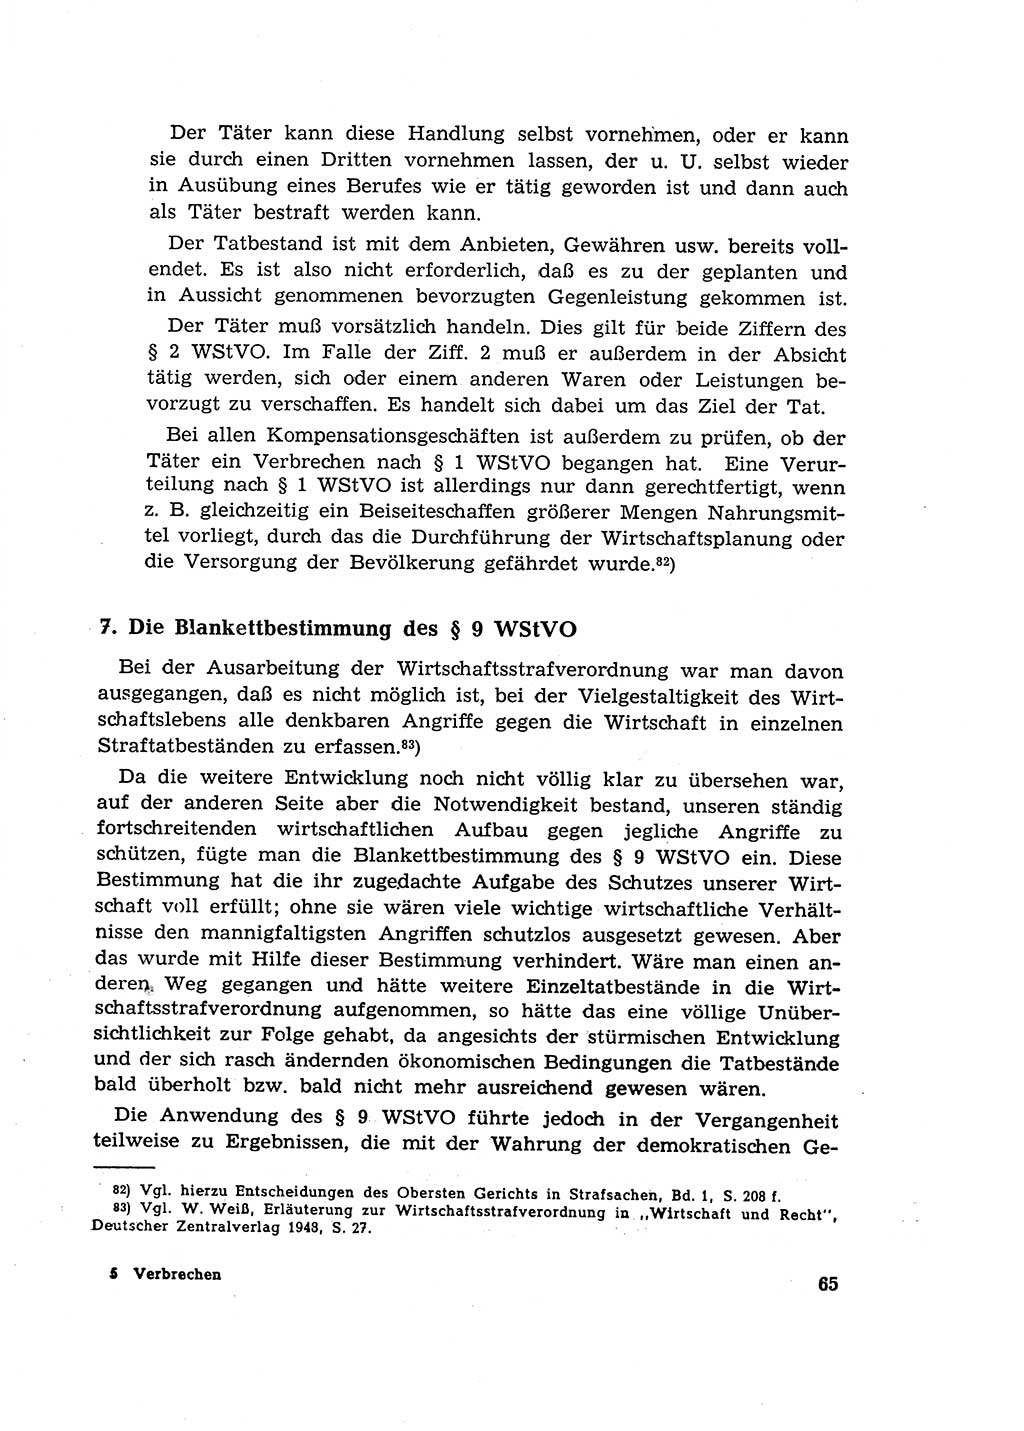 Materialien zum Strafrecht, Besonderer Teil [Deutsche Demokratische Republik (DDR)] 1955, Seite 65 (Mat. Strafr. BT DDR 1955, S. 65)